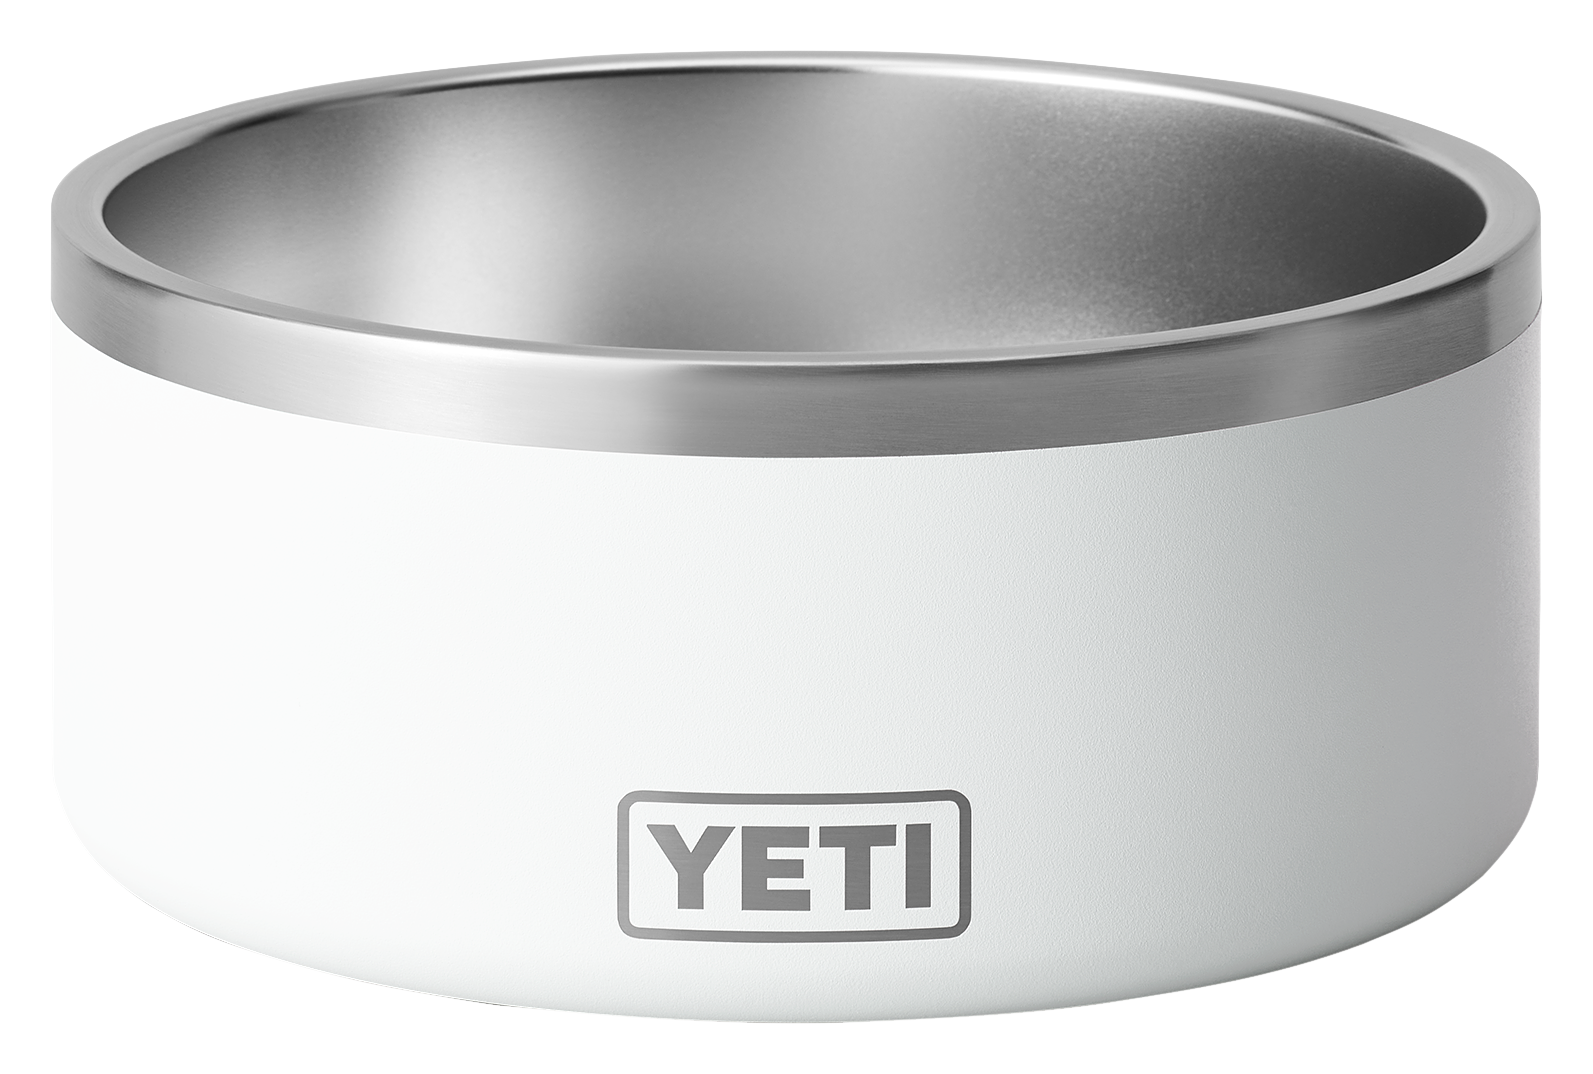 Personalized YETI Boomer 4 Dog Bowl - Duracoat - Customized Your